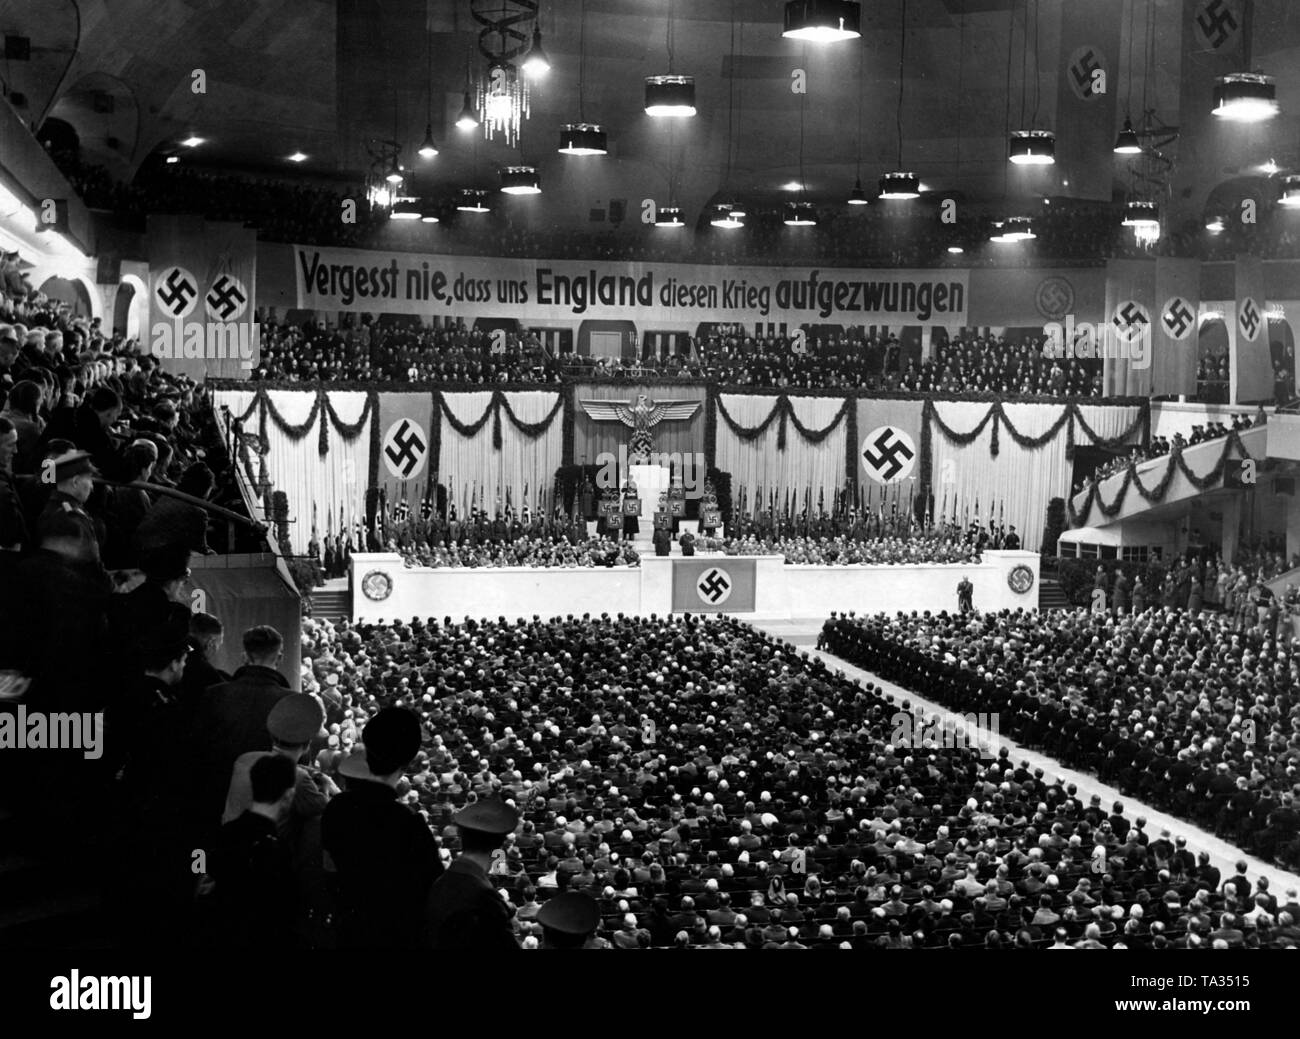 Der Propagandaminister Joseph Goebbels eine Rede auf einer Party Rally der Gau Berlin der NSDAP im Berliner Sportpalast. Der Rang hängt ein Banner mit der Aufschrift "Nie vergessen, daß England dieser Krieg auf uns' gezwungen hat. Stockfoto